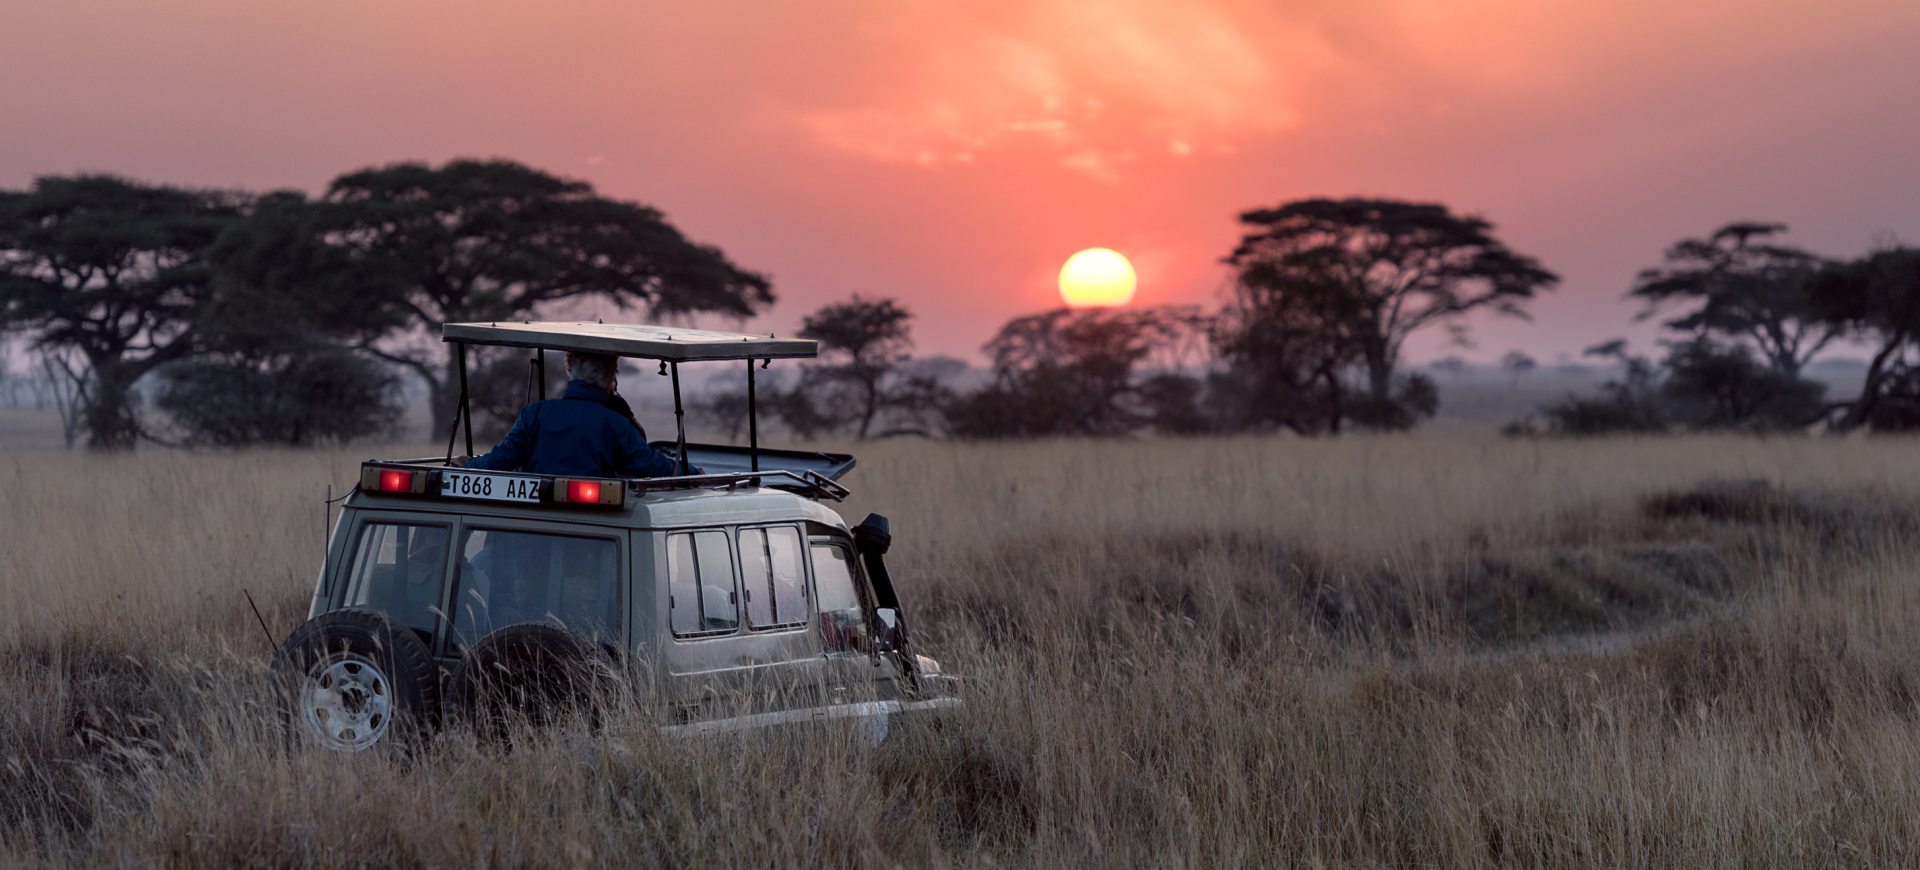 5 reasons why you should visit Masai Mara National Reserve